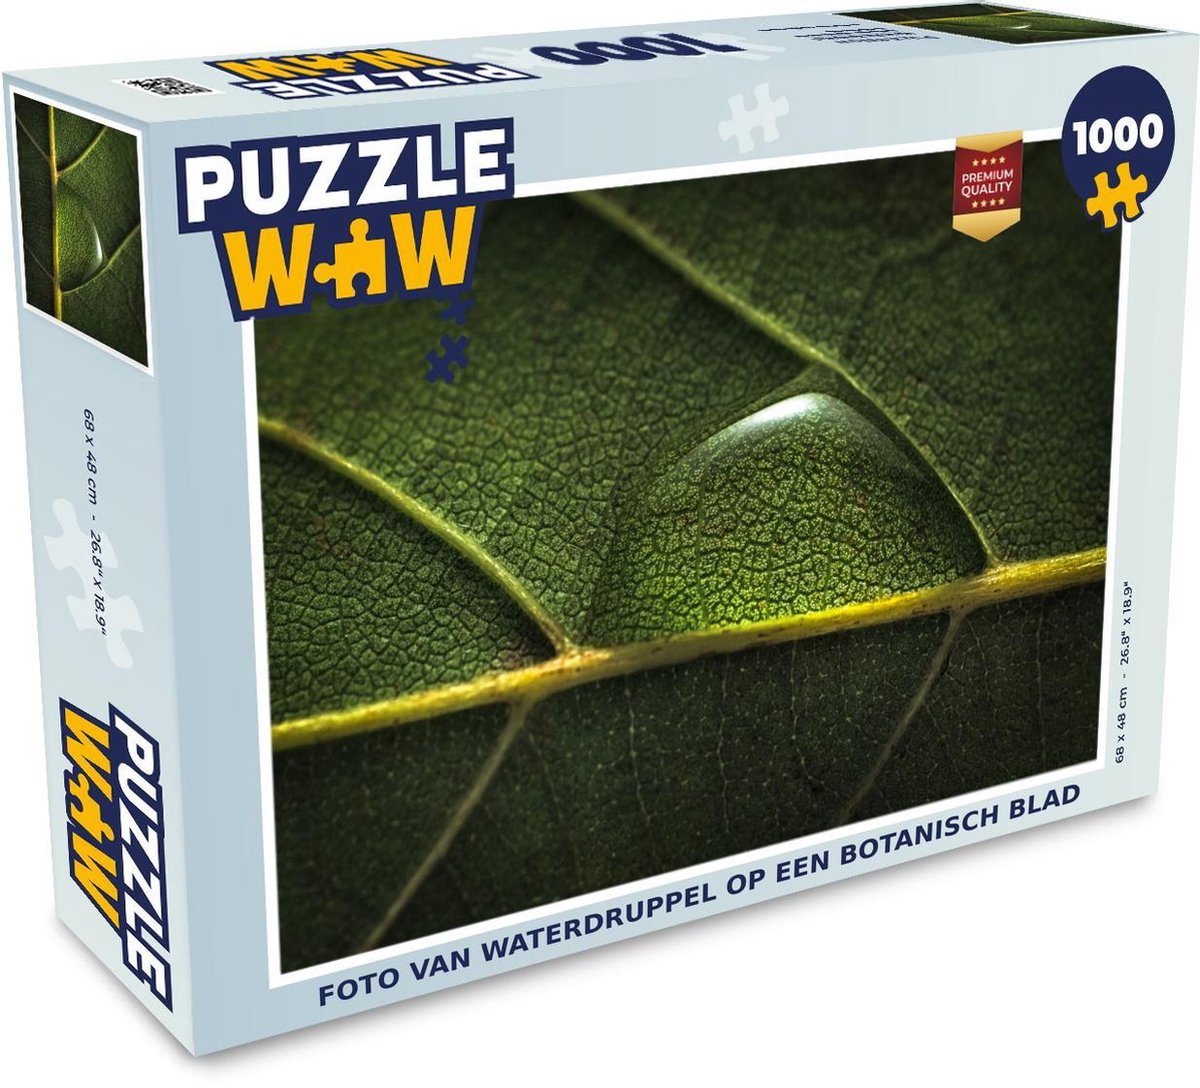 Afbeelding van product Puzzel 1000 stukjes volwassenen Botanisch 1000 stukjes - Foto van waterdruppel op een botanisch blad - PuzzleWow heeft +100000 puzzels